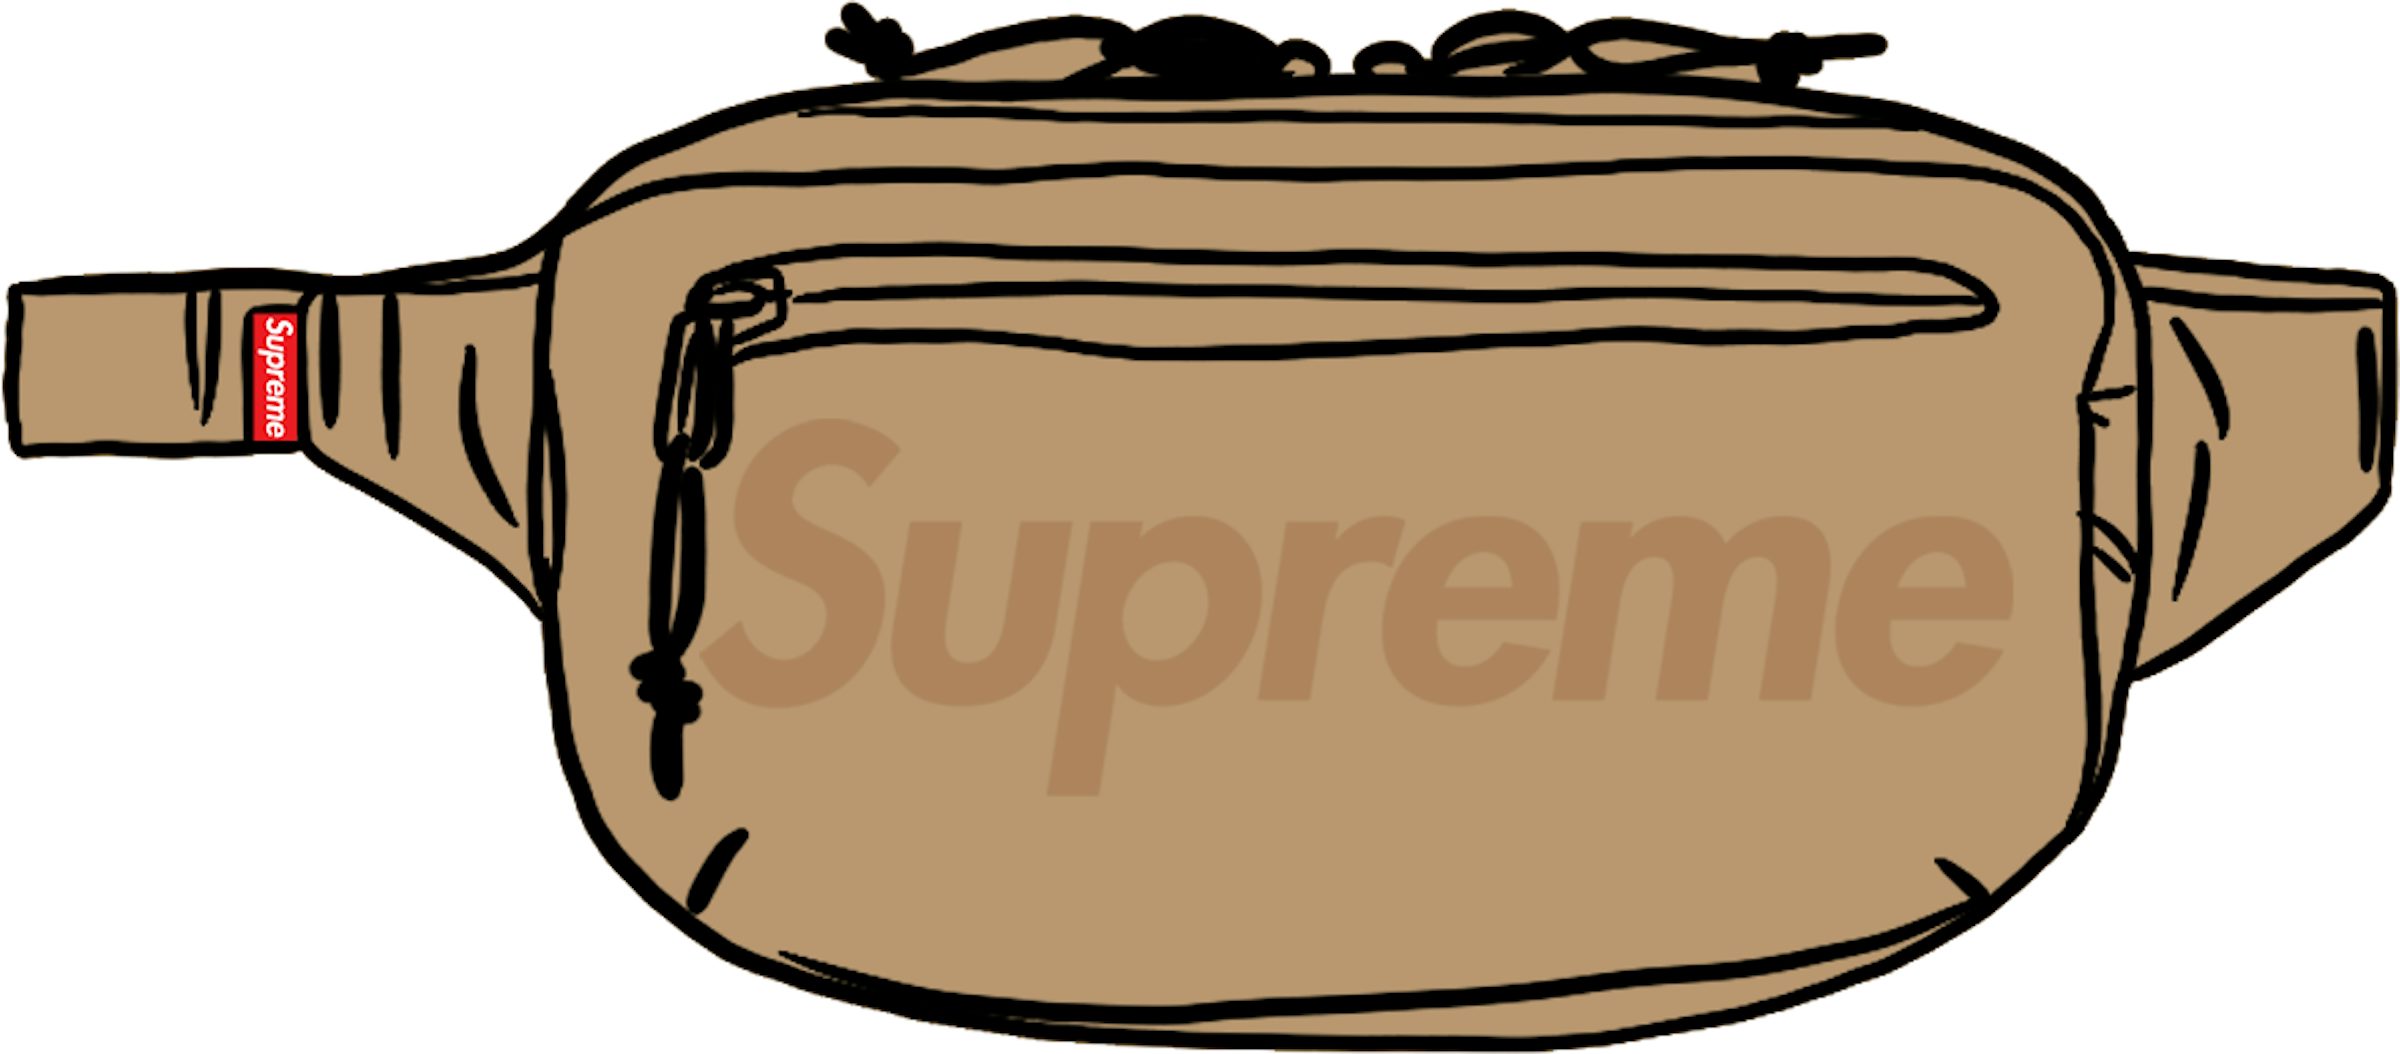 Supreme Sling Bag SS21 Tan - Perfect Pair